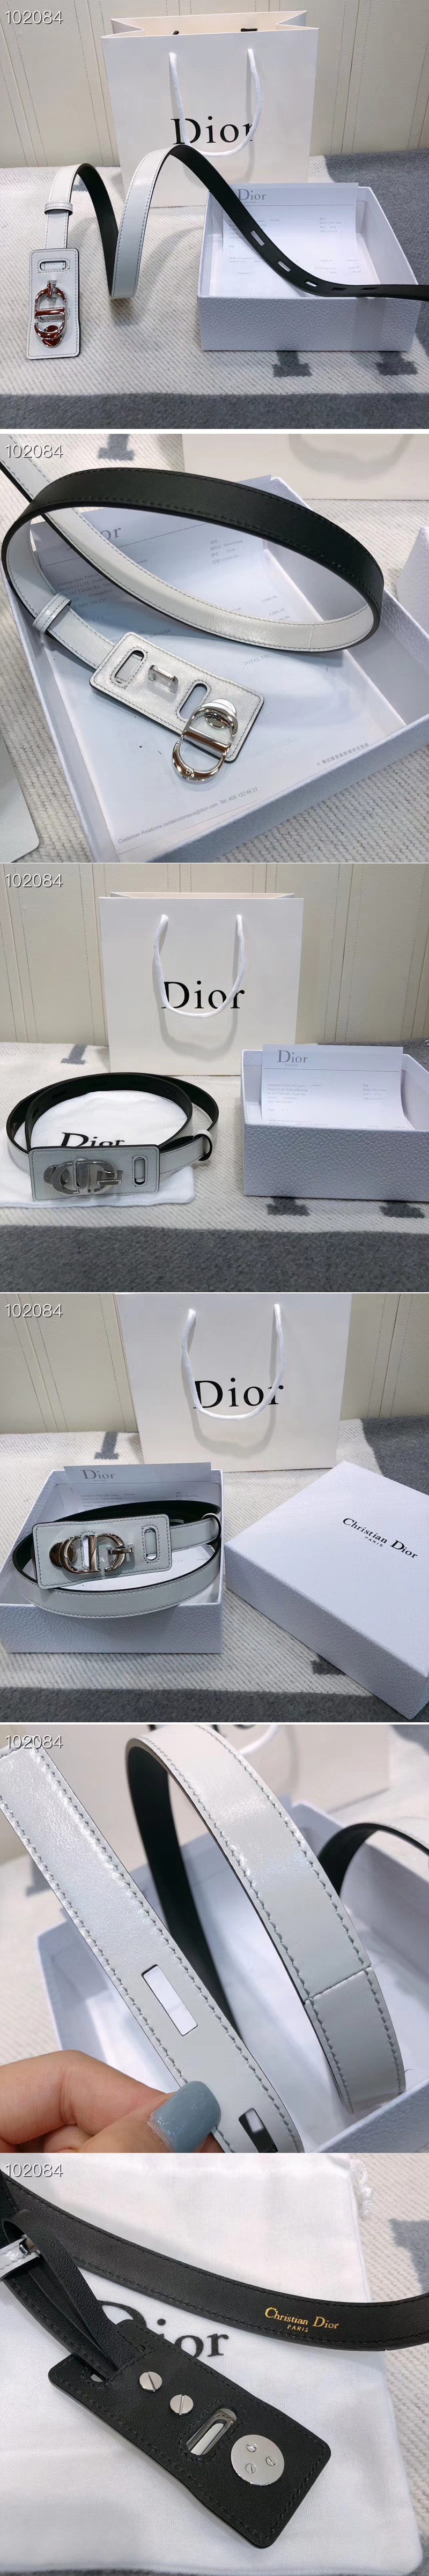 Replica Christian Dior Belts